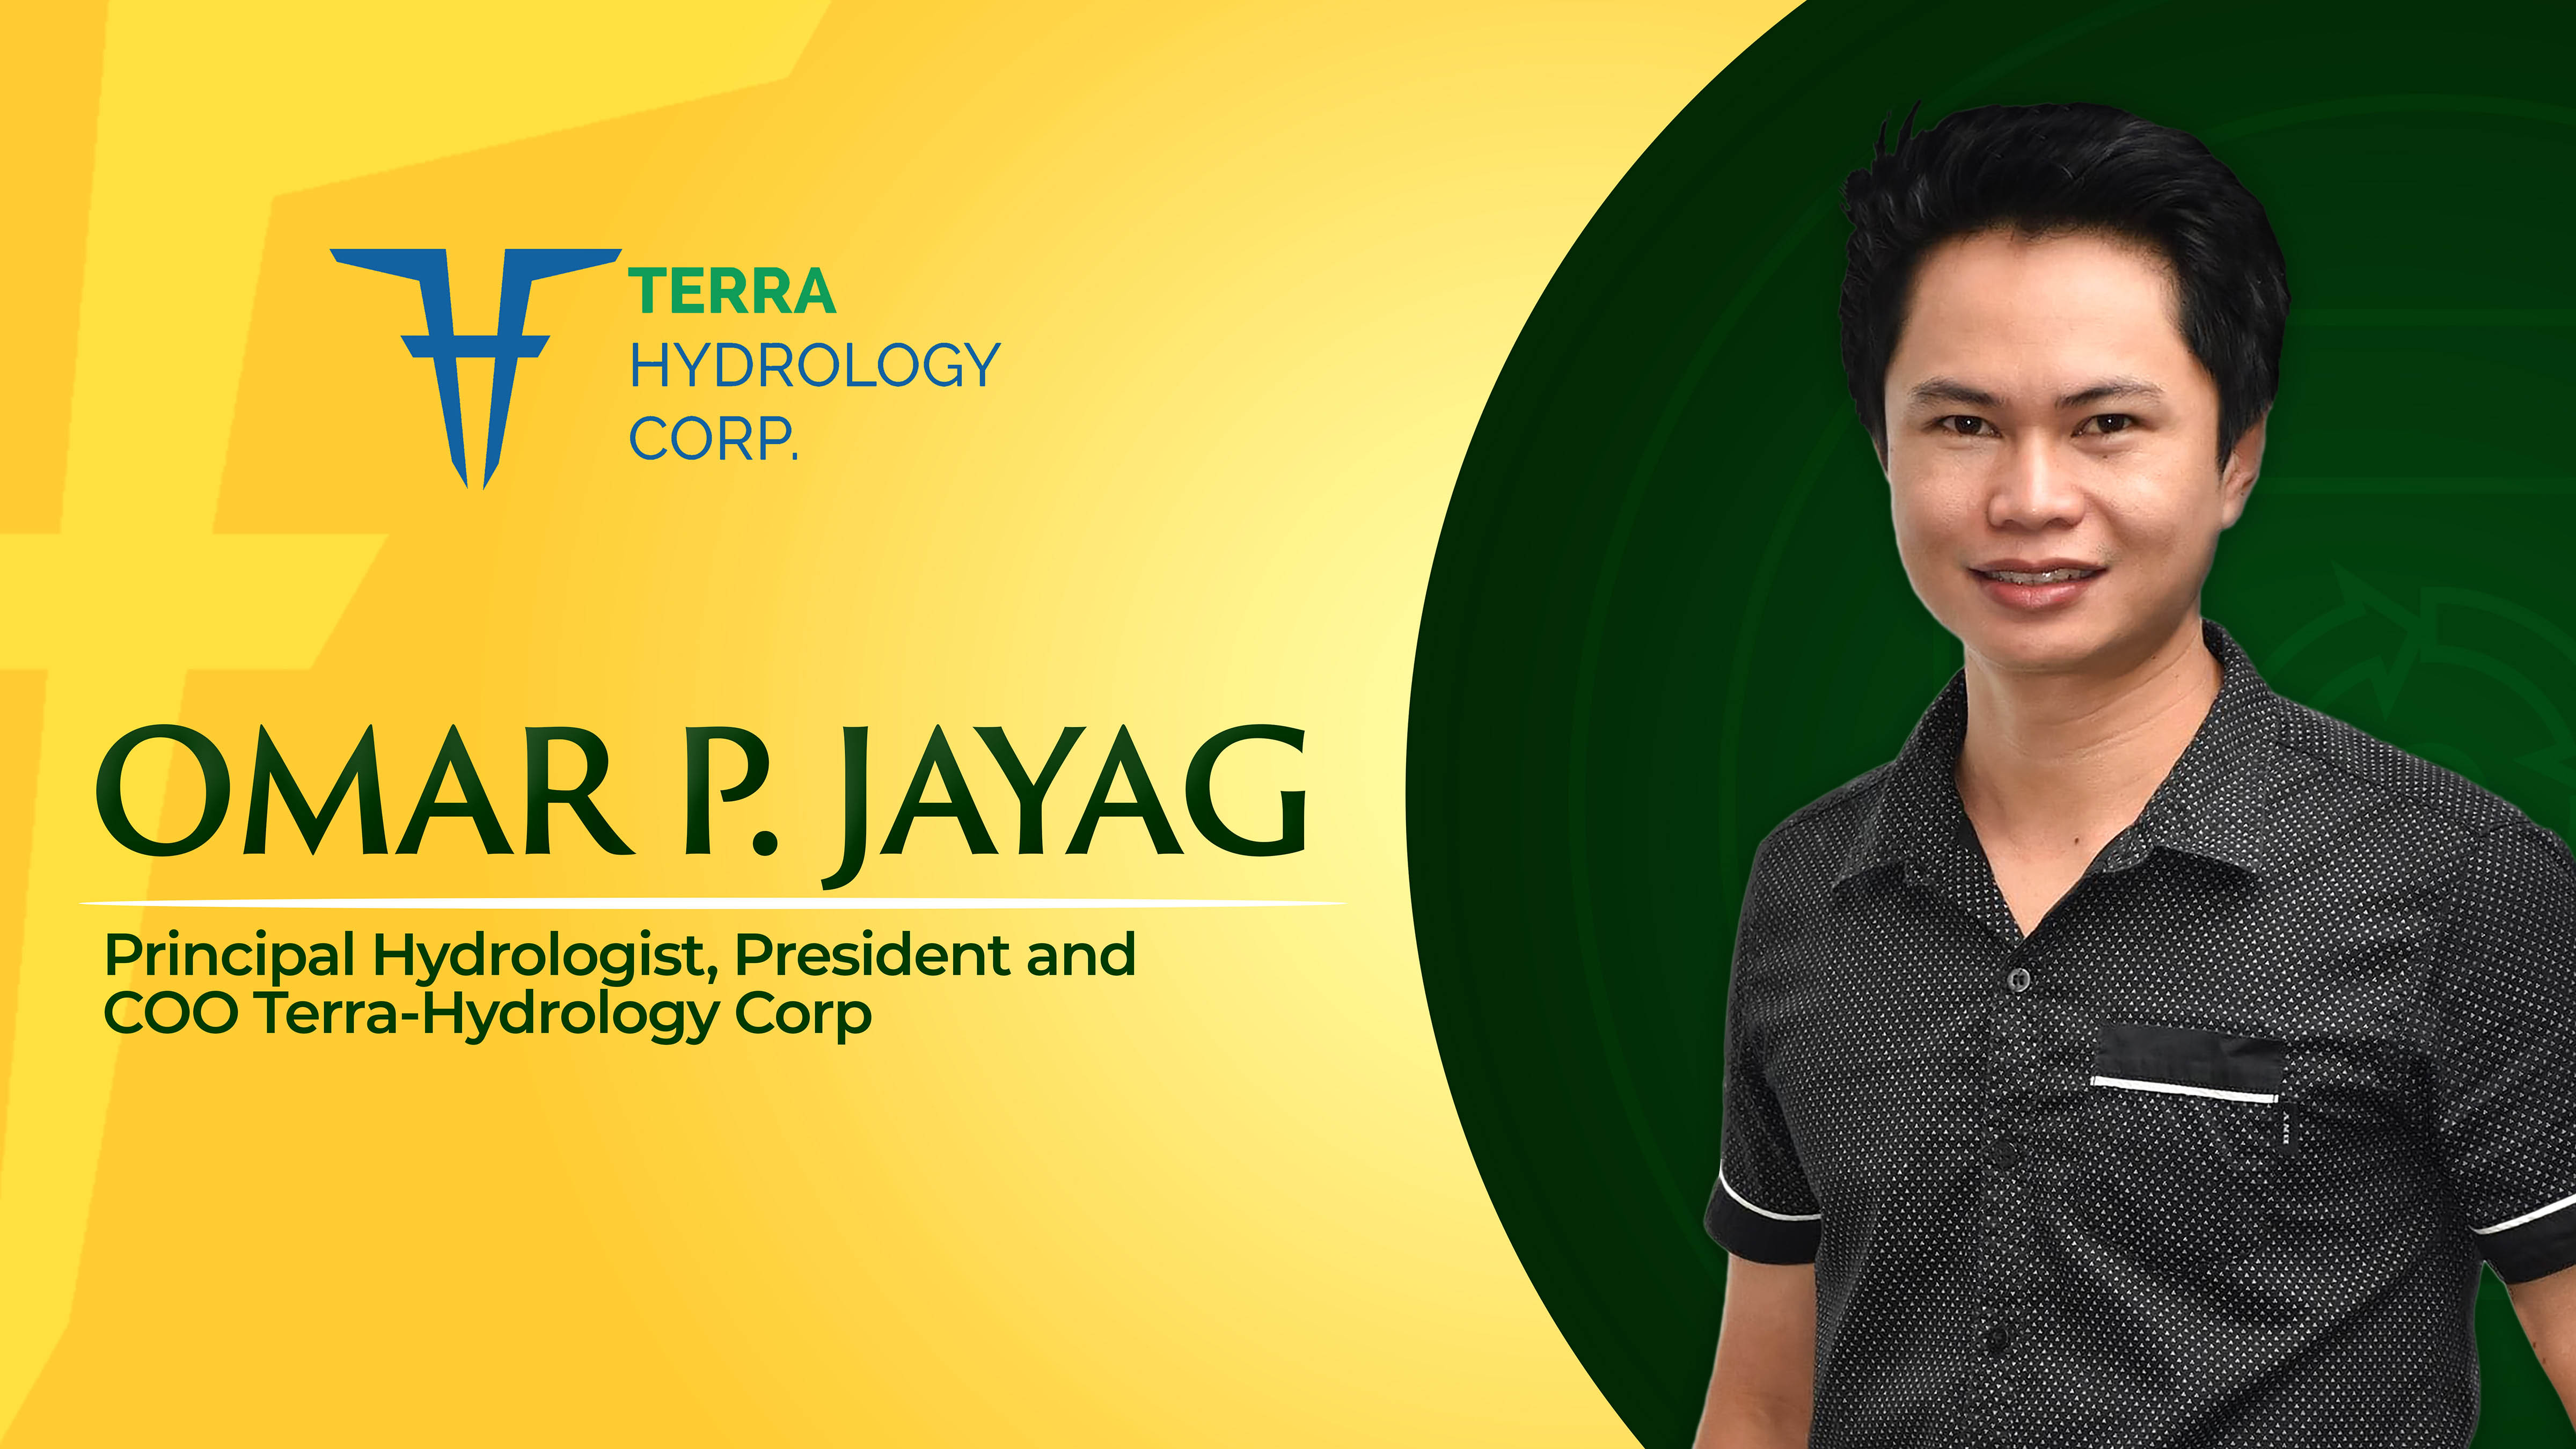 Engr. Omar P. Jayag